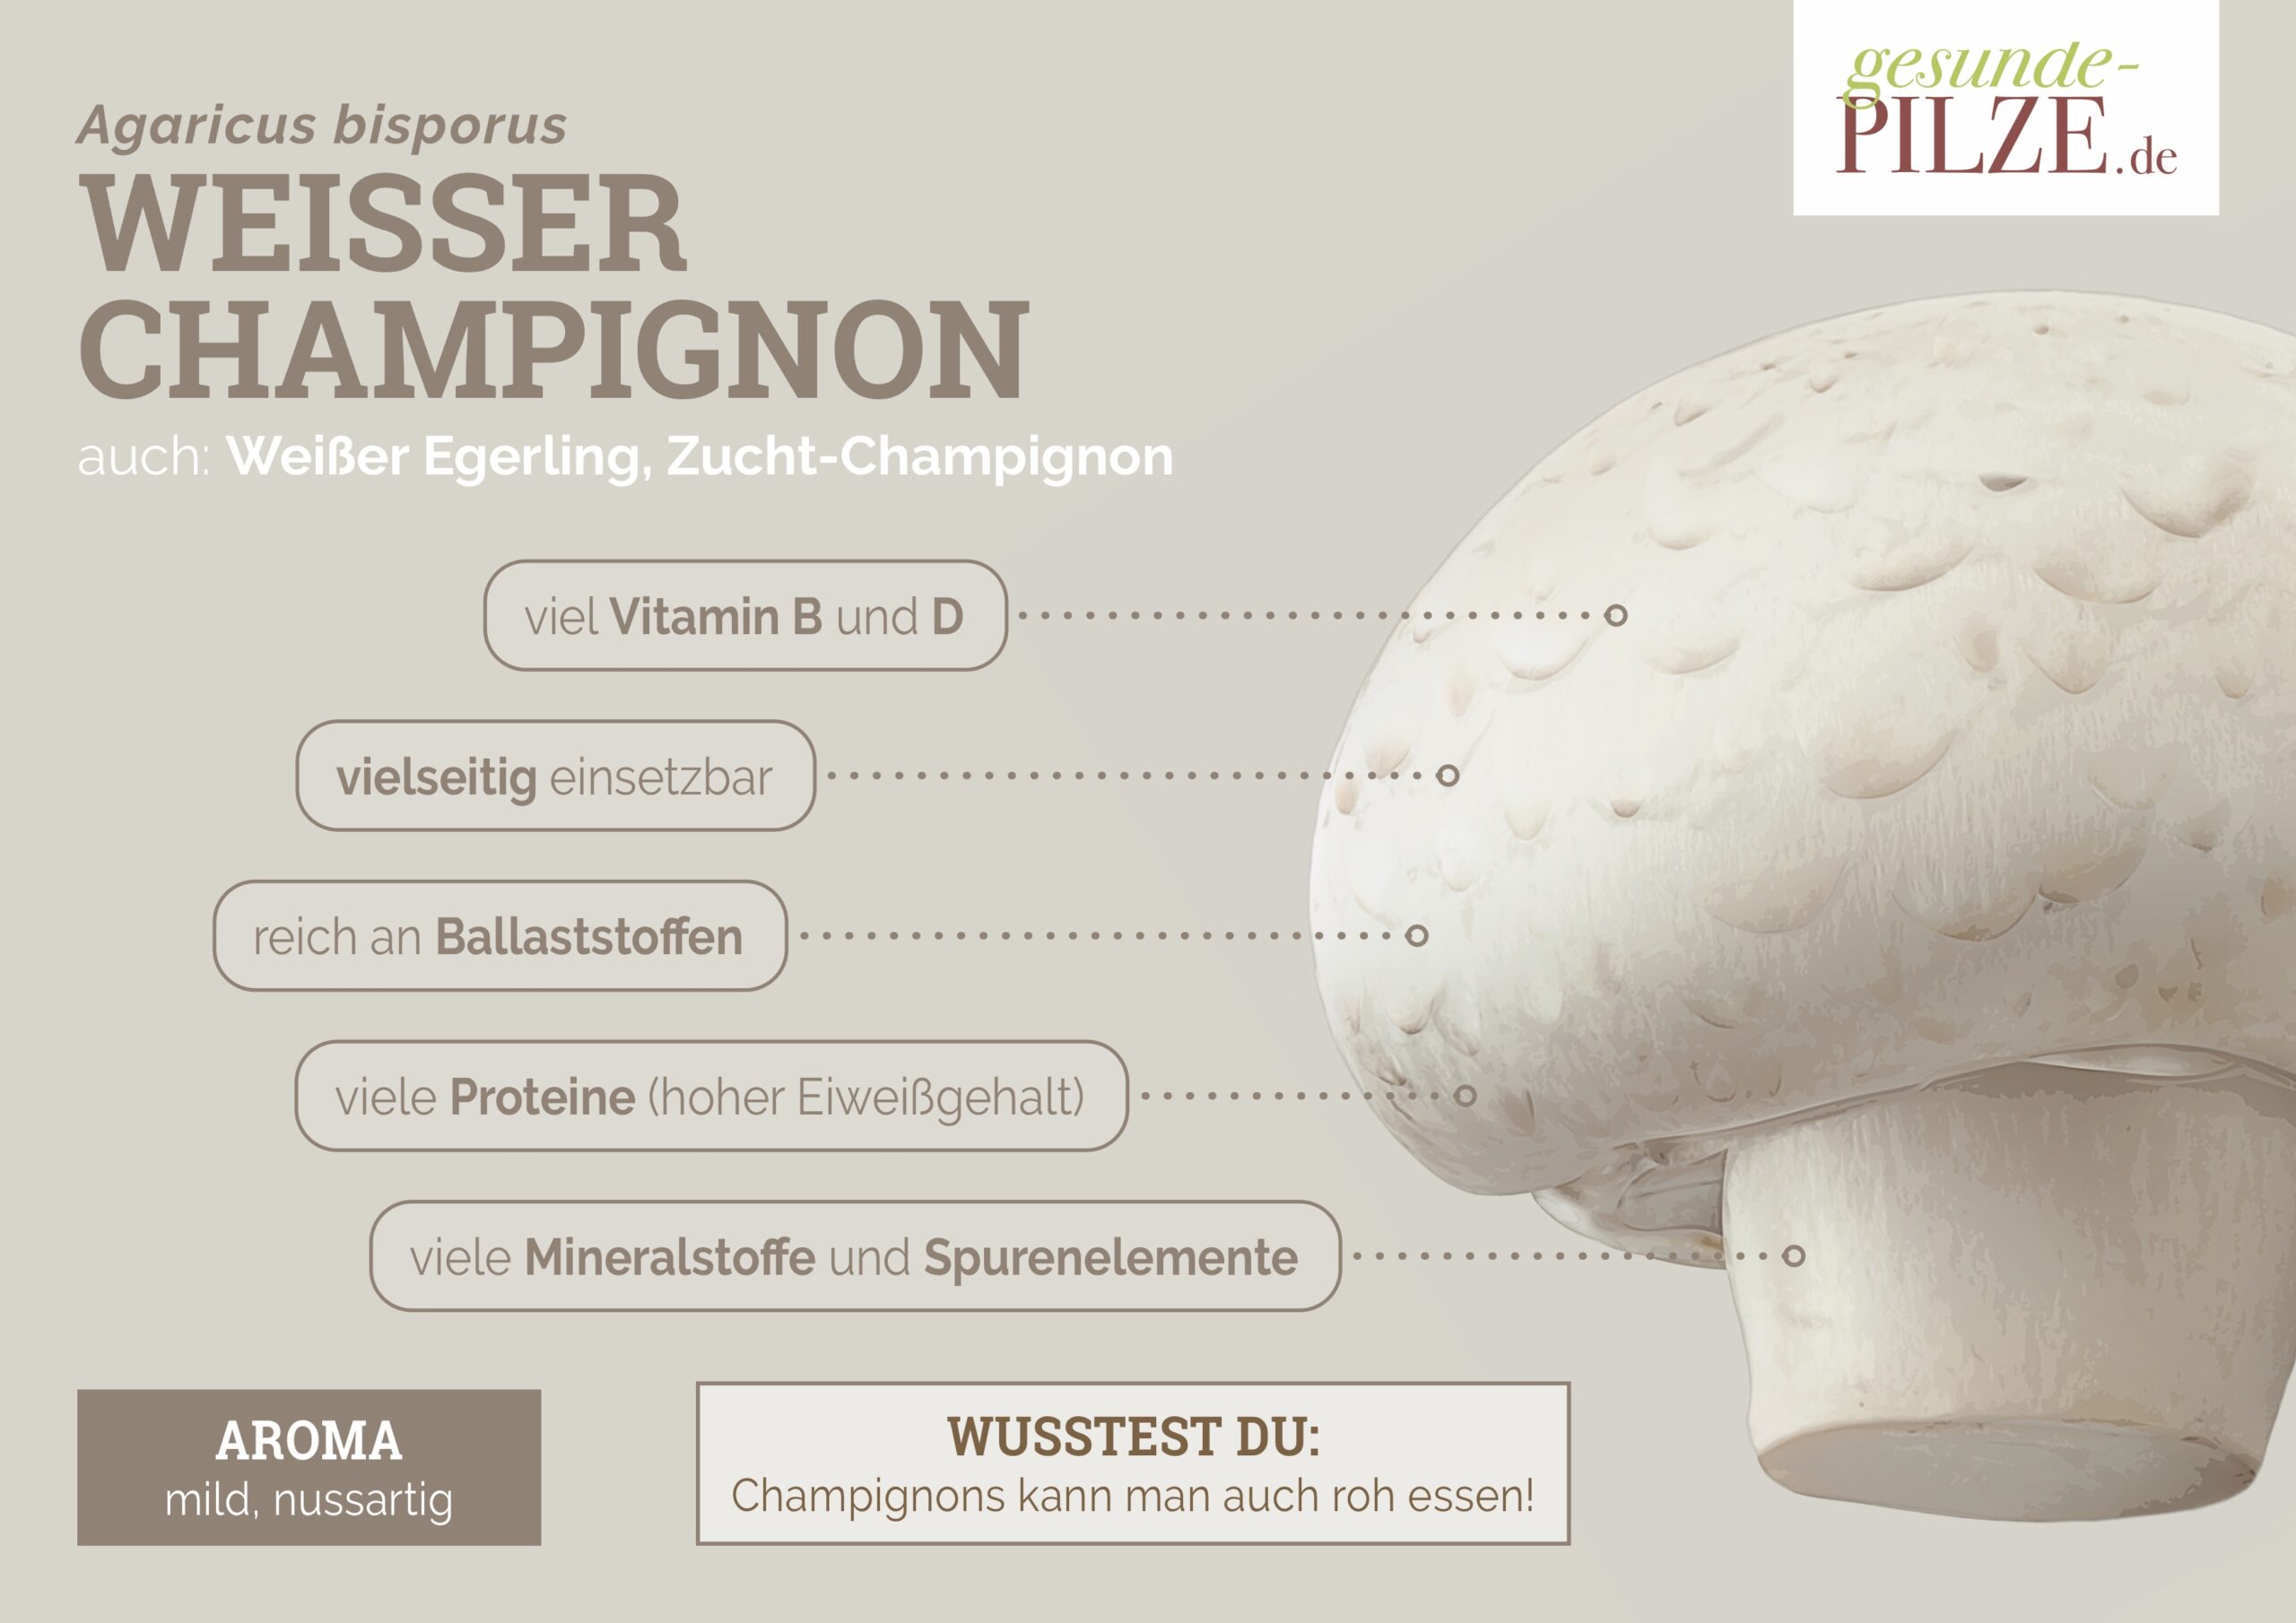 //www.gesunde-pilze.de/wp-content/uploads/2020/10/Poster_Weisser_Champignon_quer-scaled.jpg